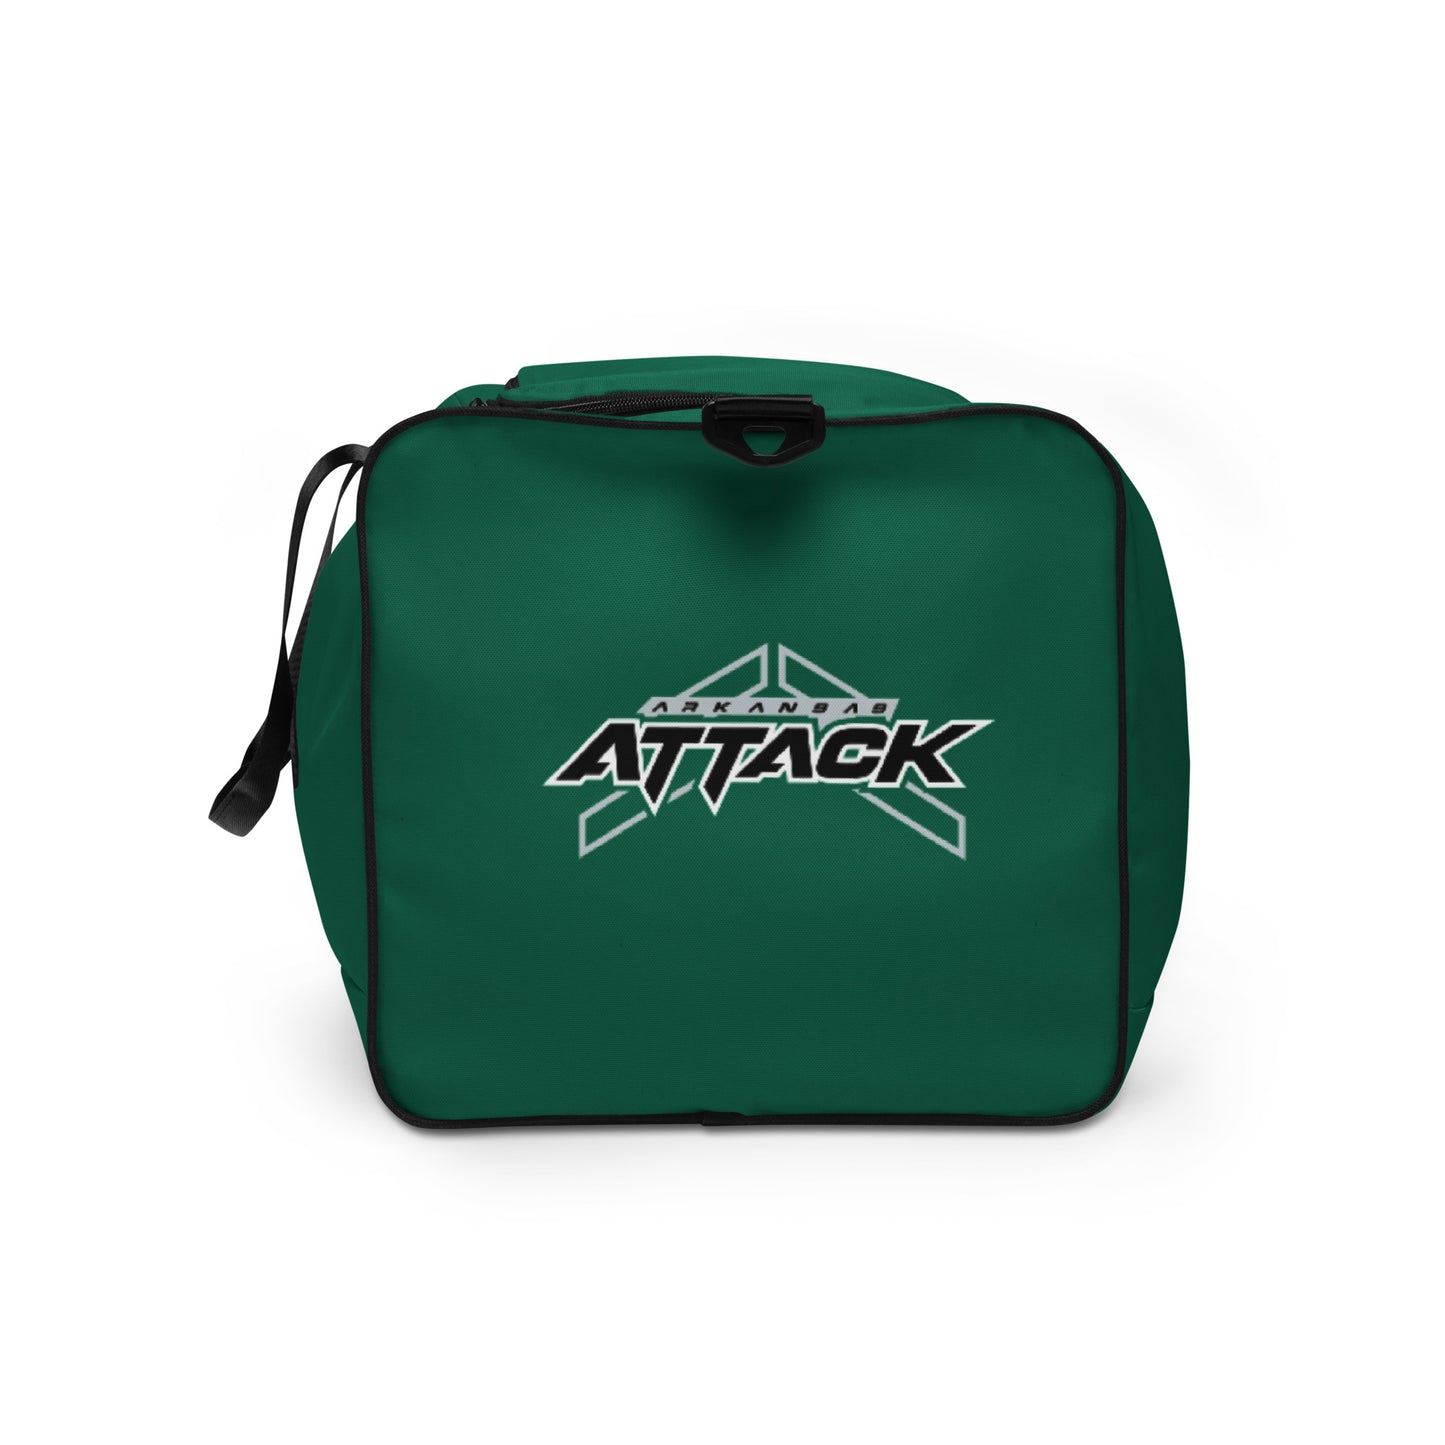 Attack Duffle bag